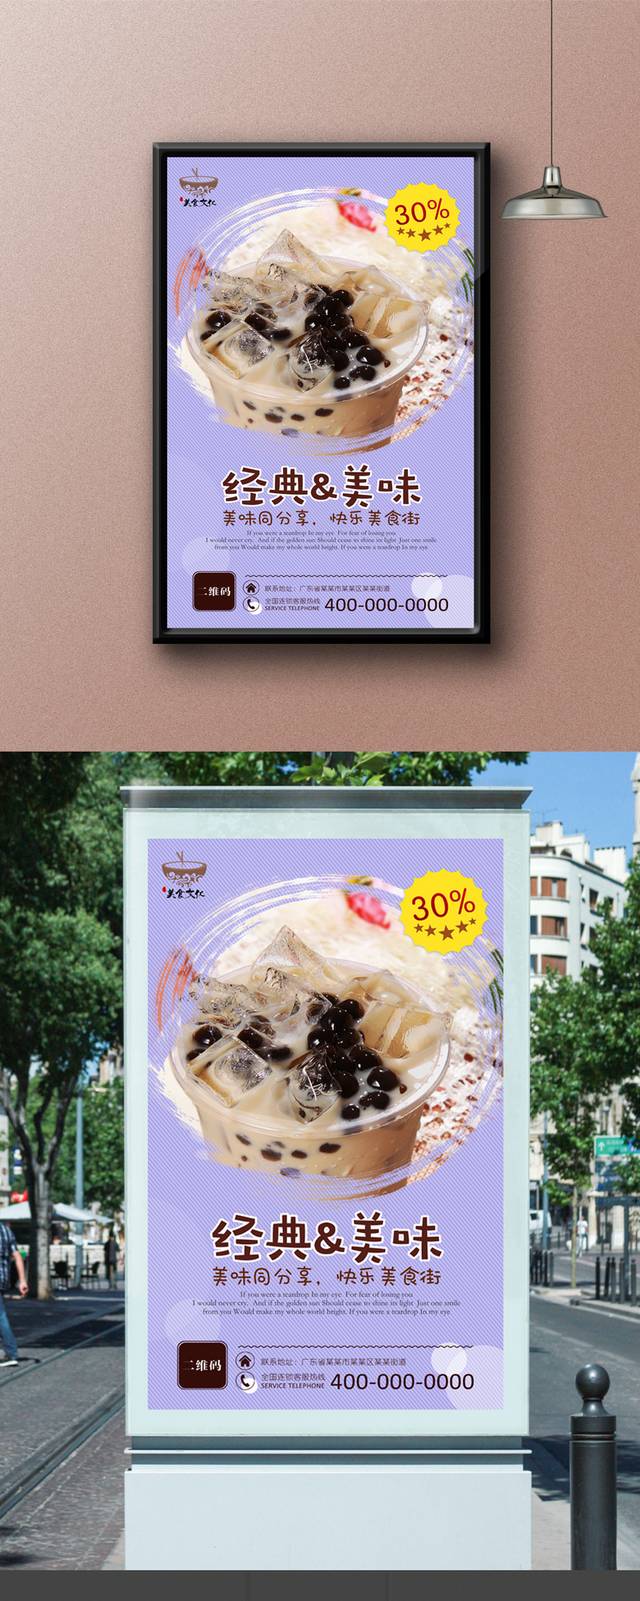 奶茶店宣传海报